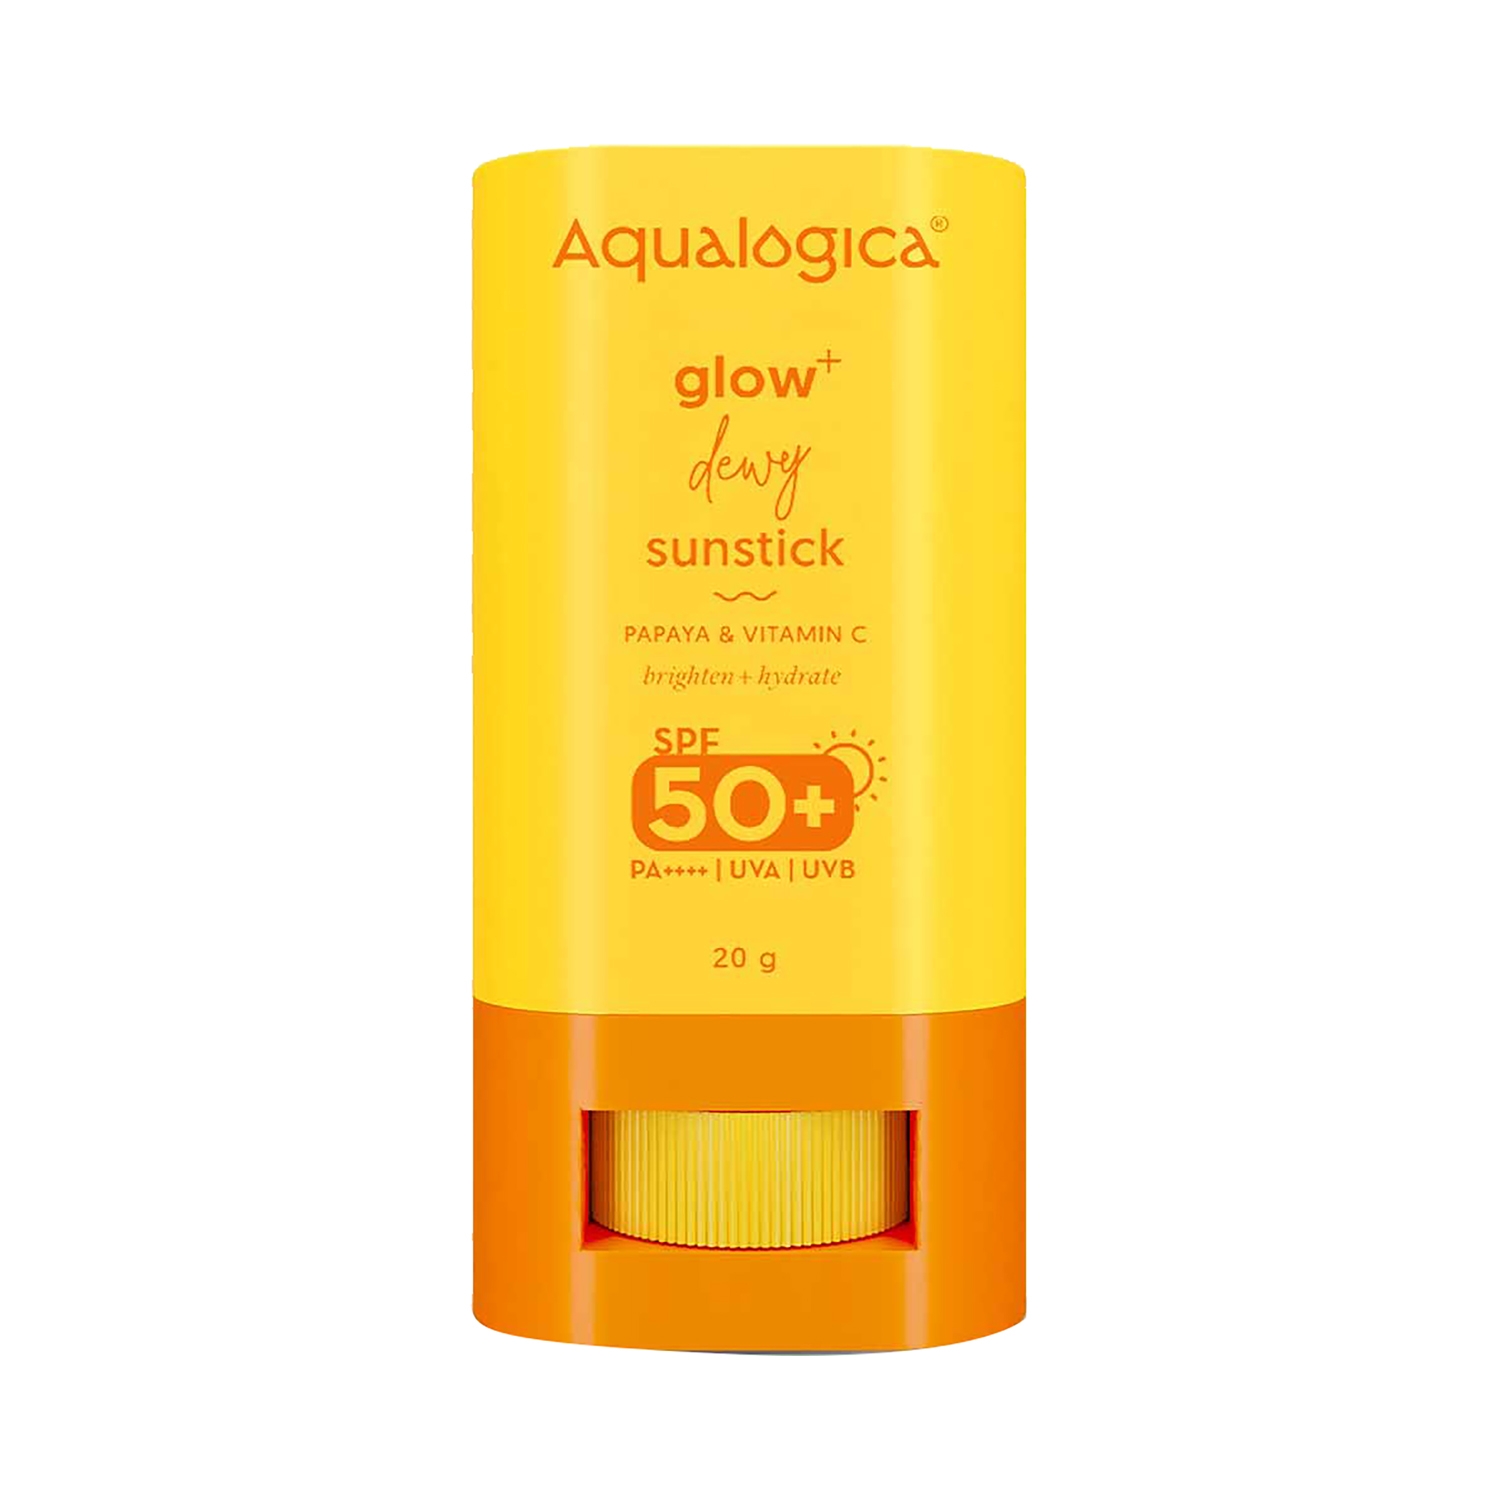 Aqualogica | Aqualogica Glow+ Dewy Sunstick SPF 50 PA++++ With Papaya & Vitamin C (20g)